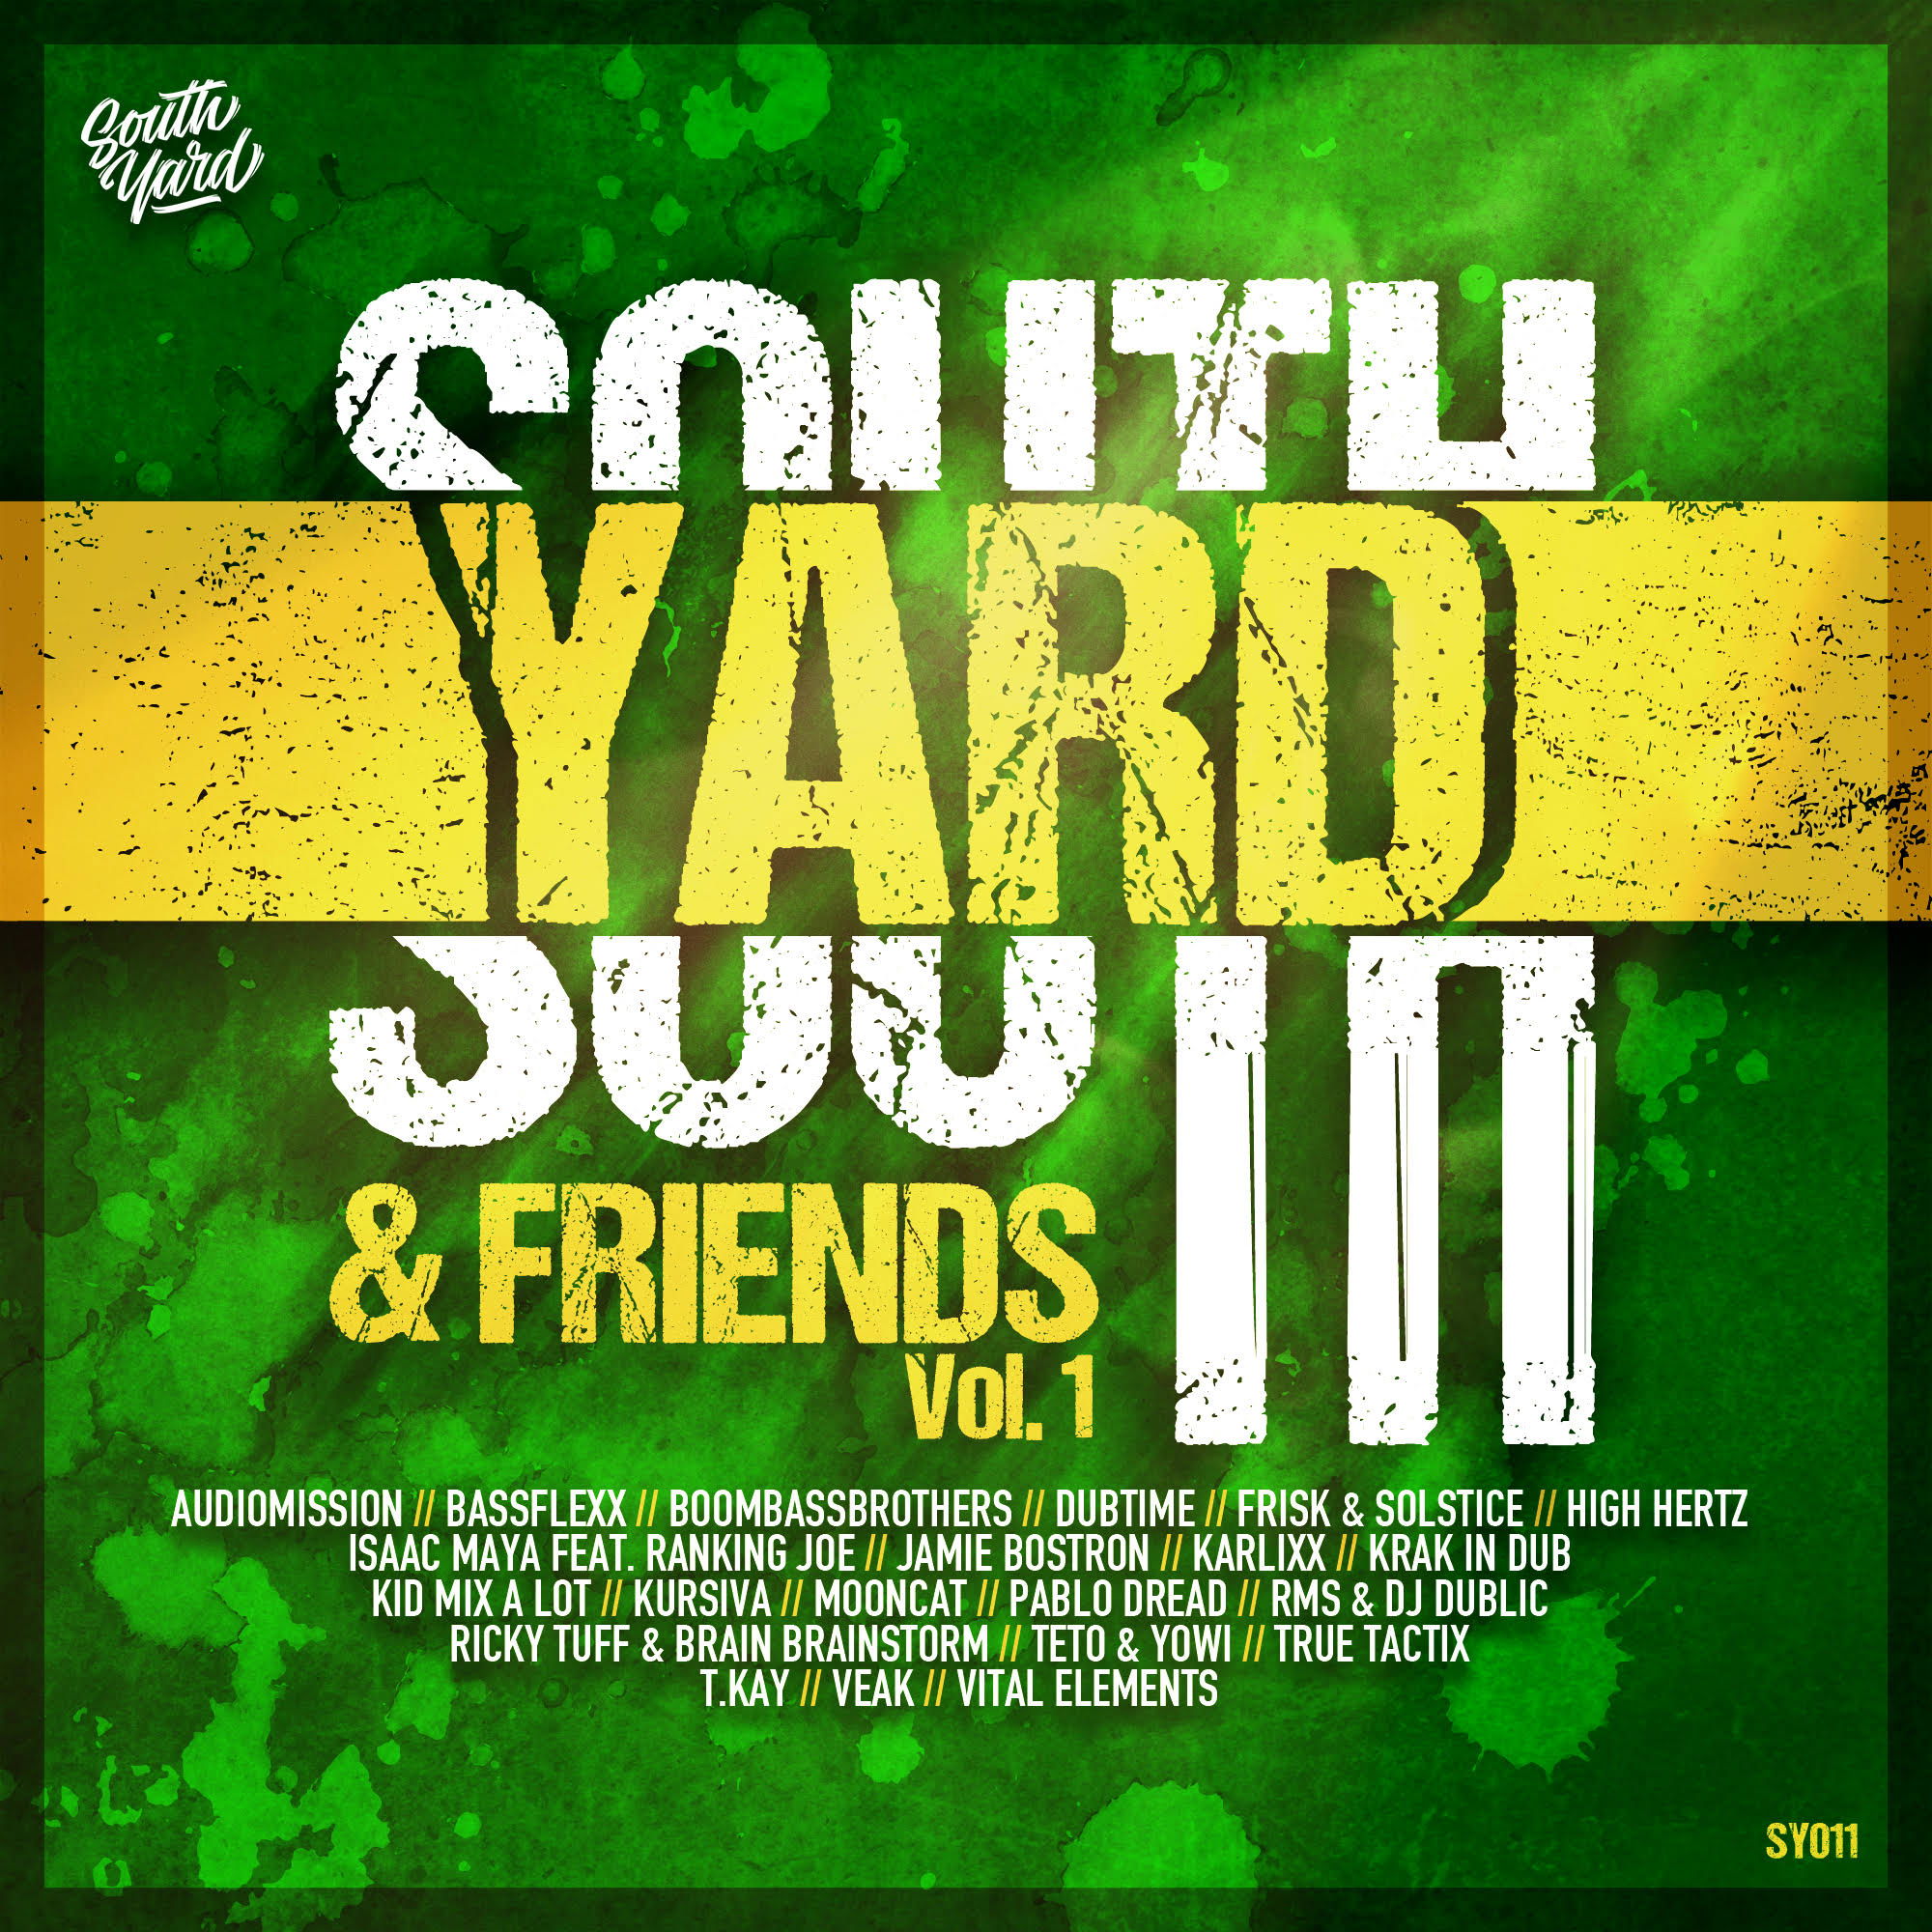 South Yard & Friends Vol.1